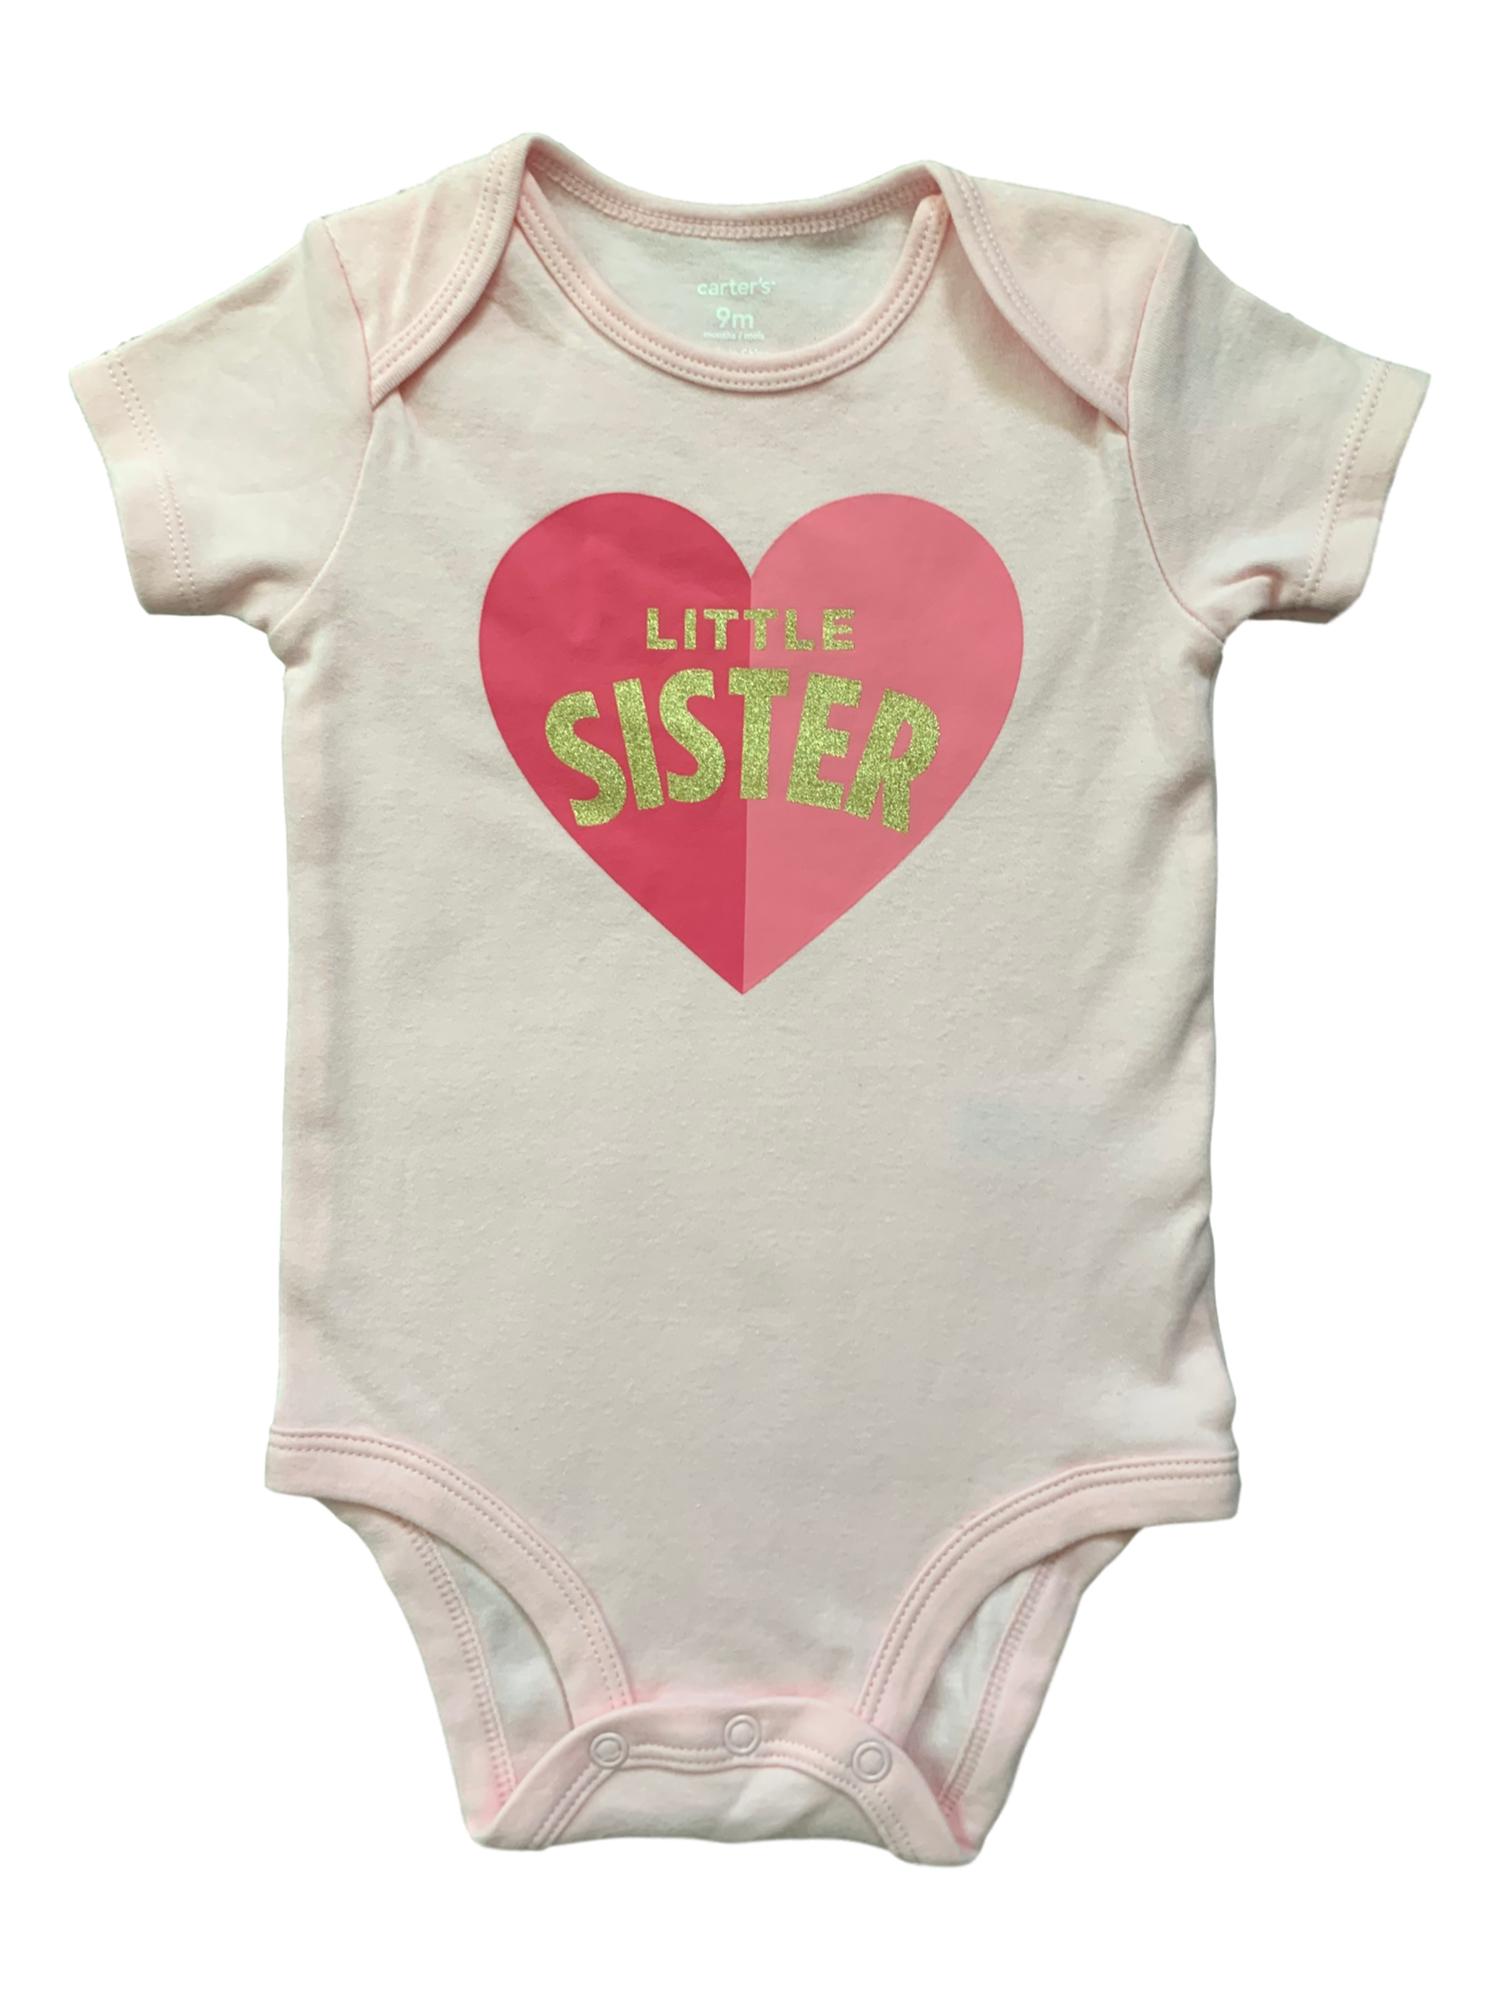 Carter's Infant Girls Light Pink Little Sister Short Sleeve Bodysuit Creeper 9M